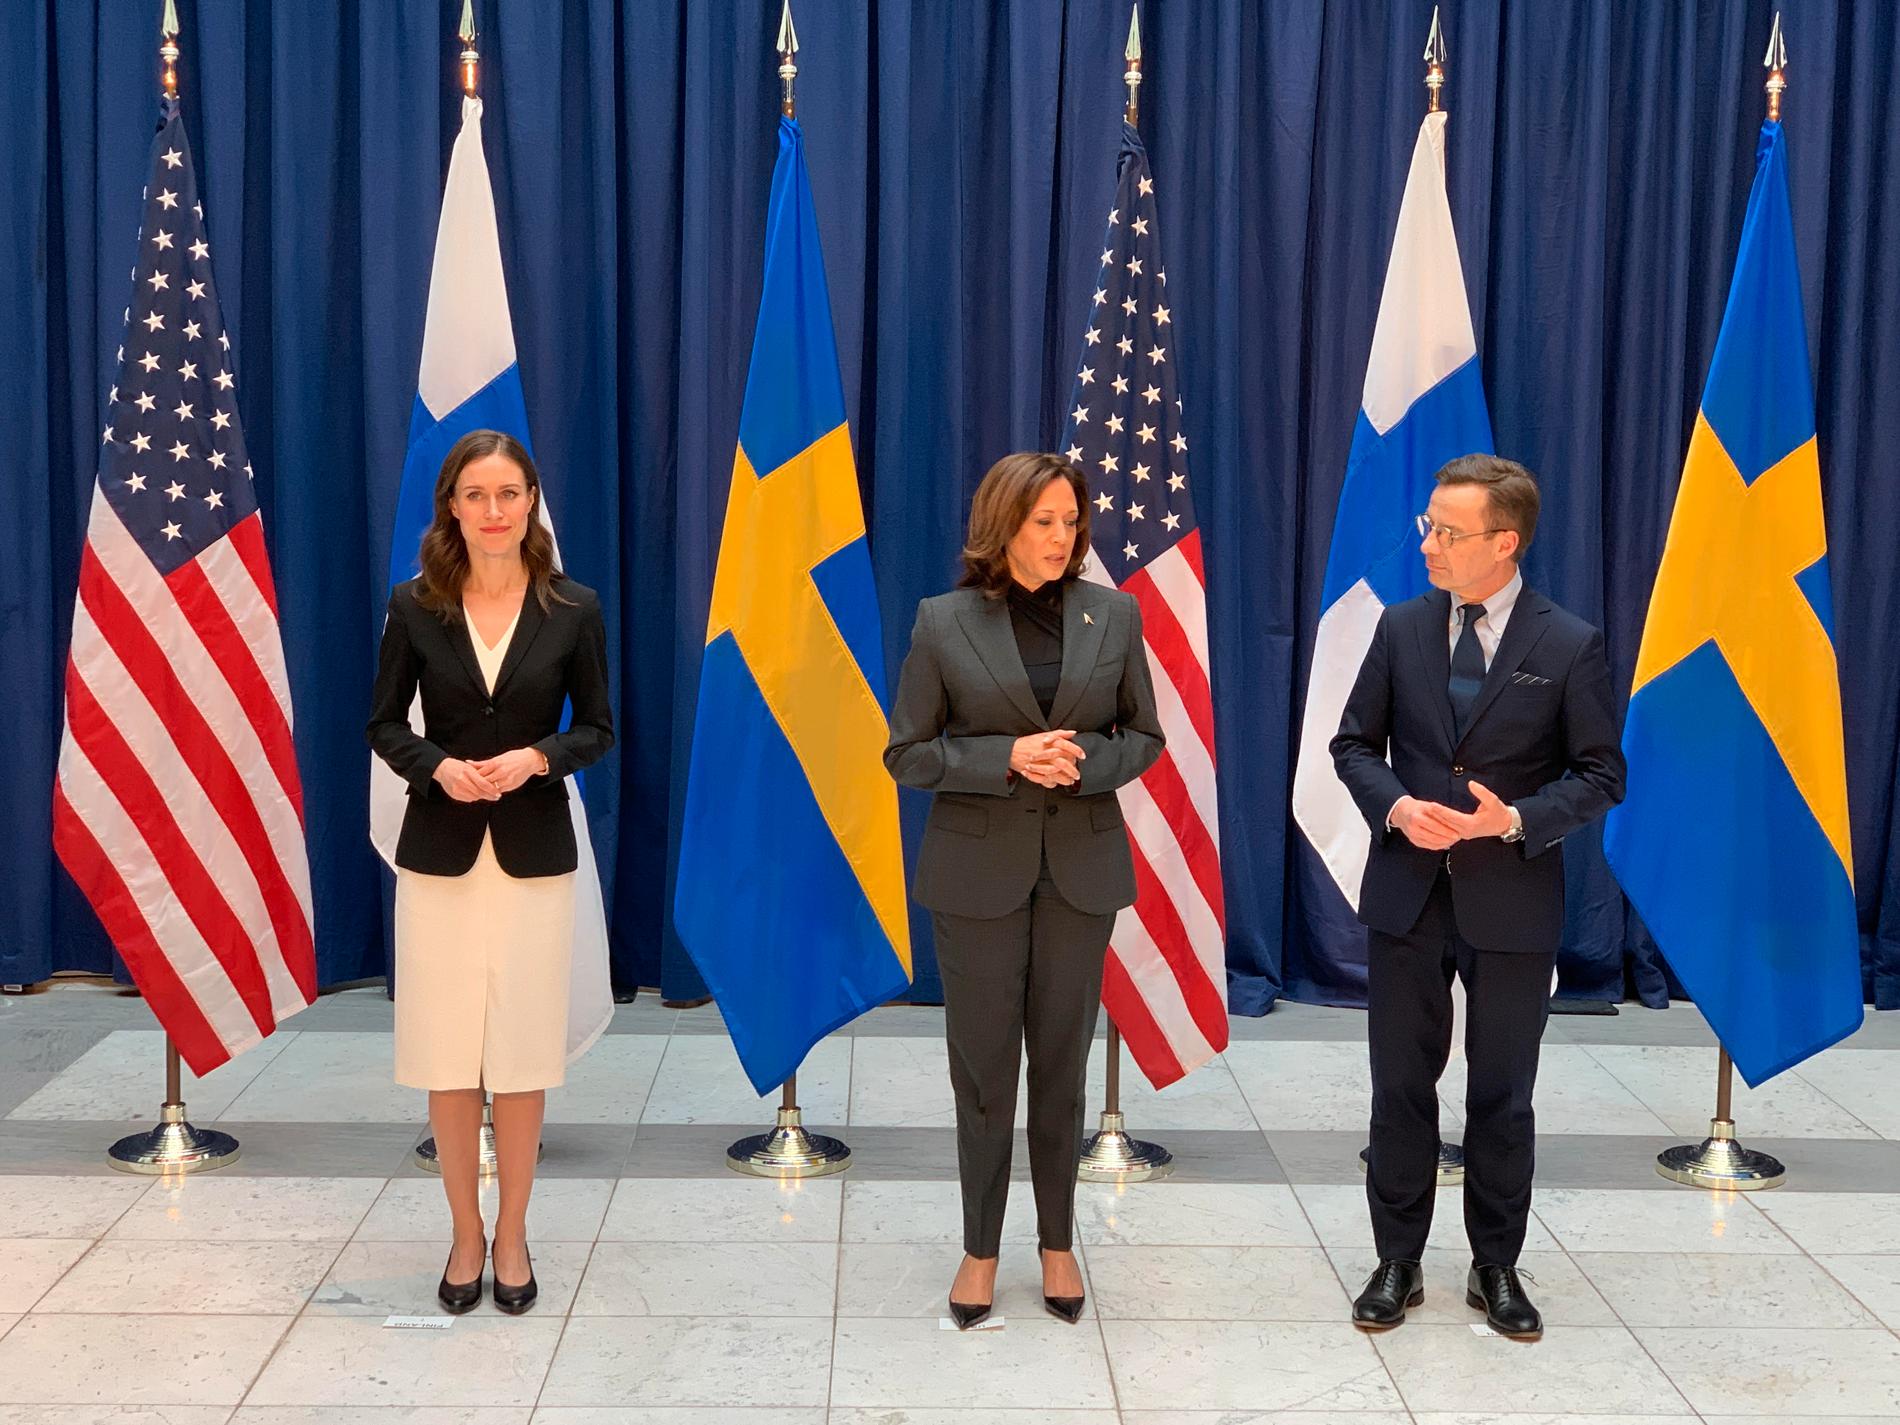 Sverige och Finland tackar Harris för USA-stöd